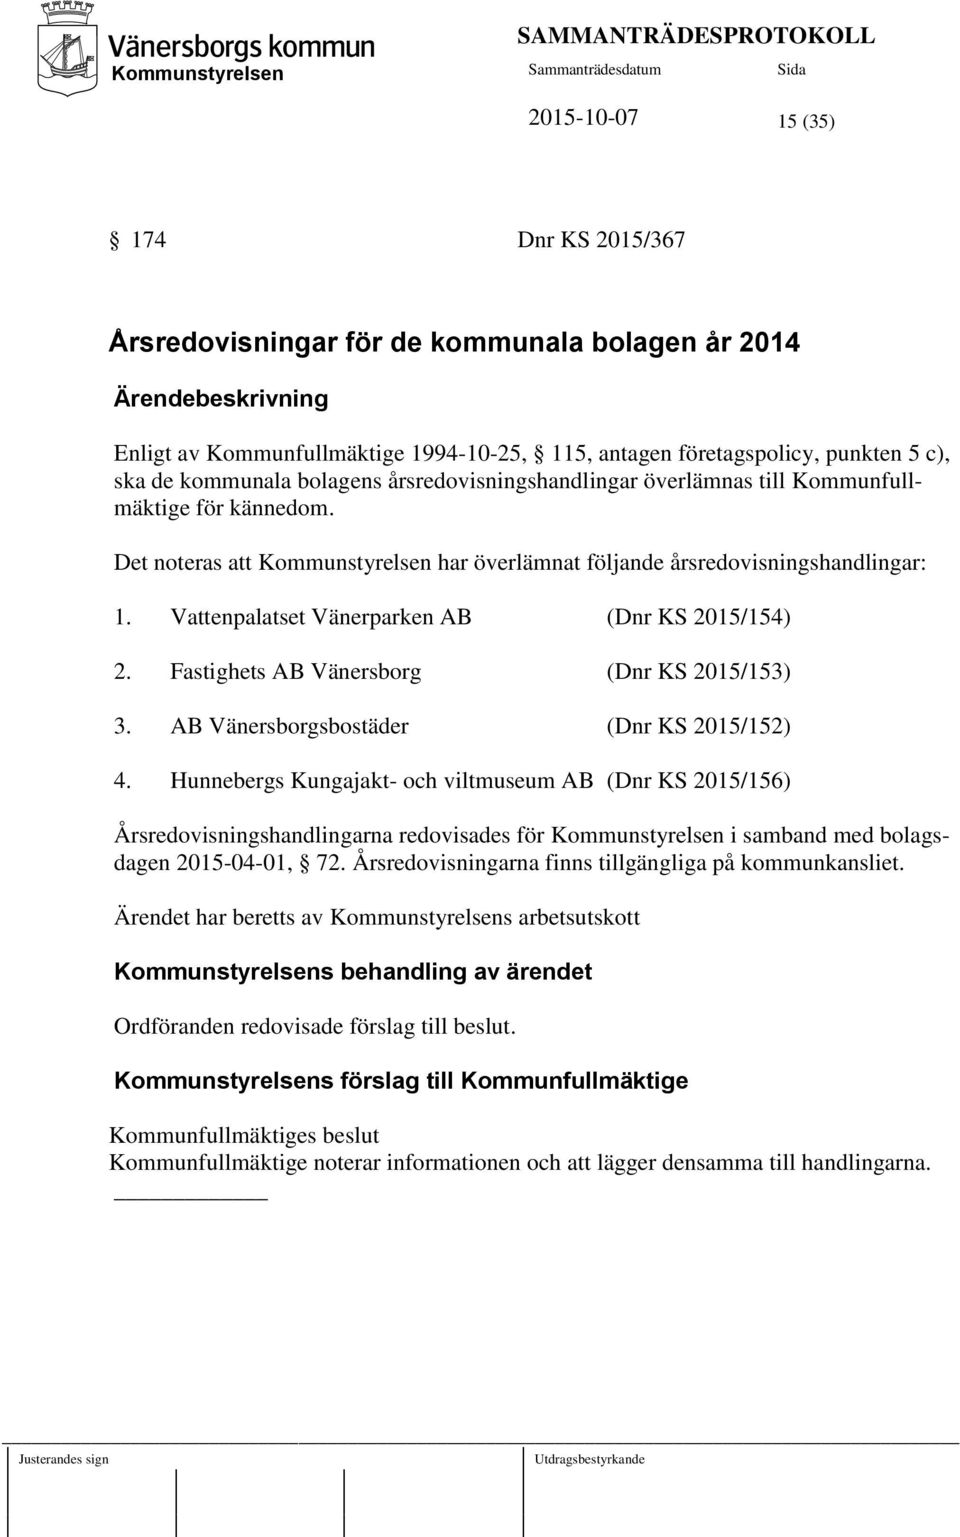 Vattenpalatset Vänerparken AB (Dnr KS 2015/154) 2. Fastighets AB Vänersborg (Dnr KS 2015/153) 3. AB Vänersborgsbostäder (Dnr KS 2015/152) 4.